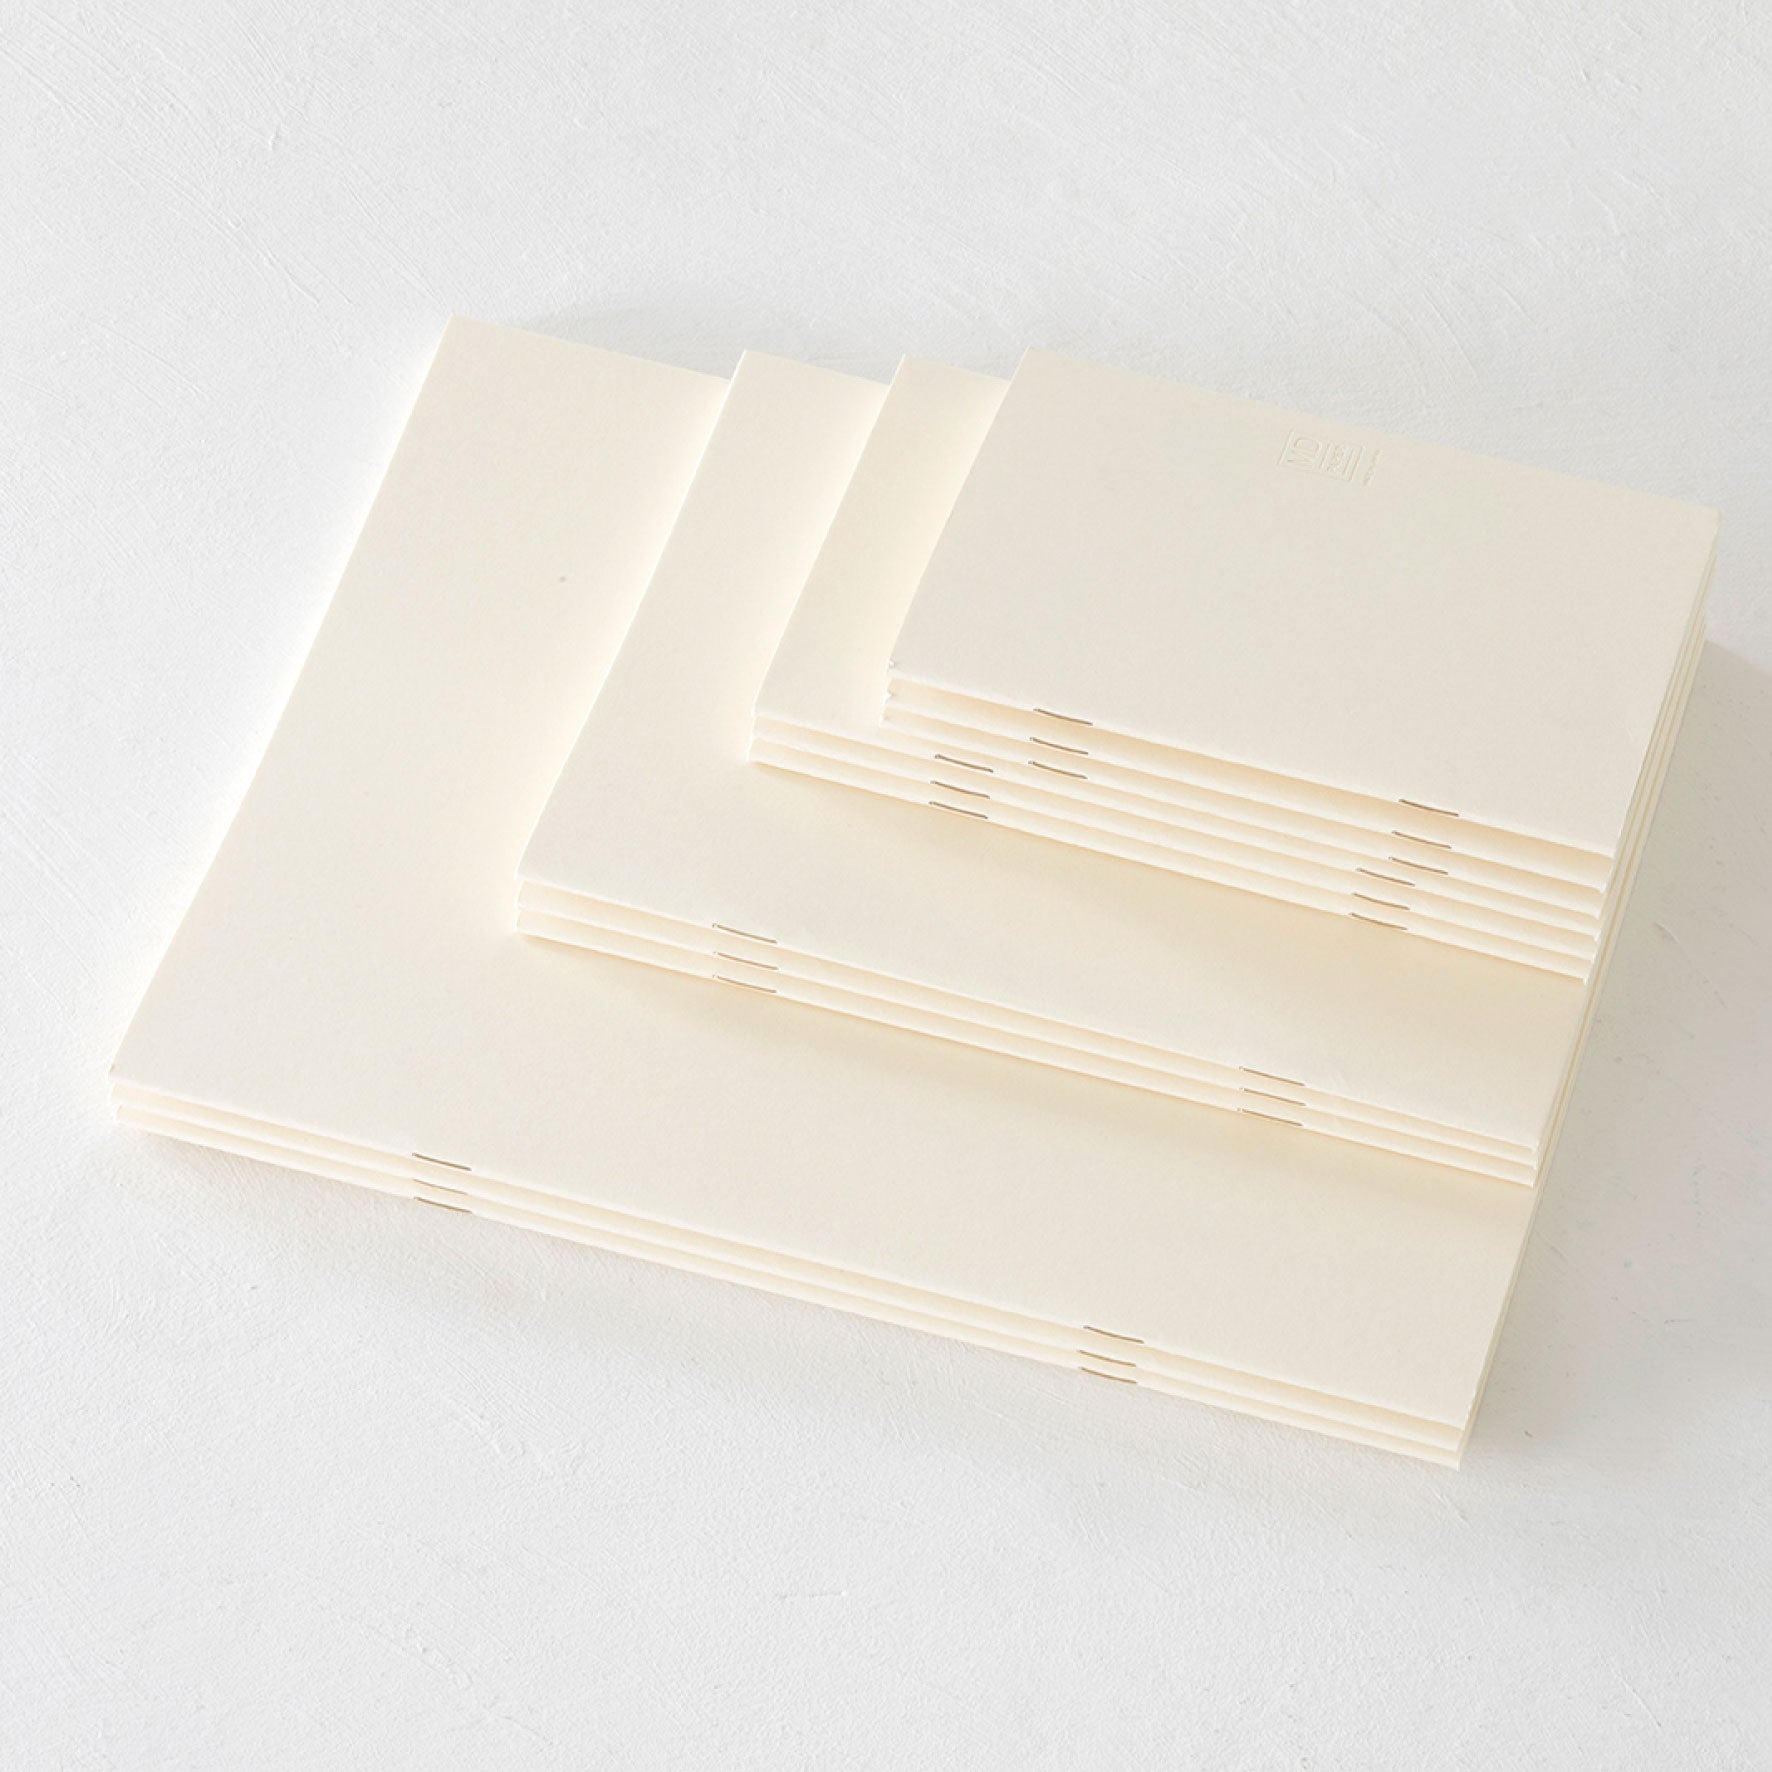 Midori - Notebook - MD Paper - Light - B6 Slim - Grid